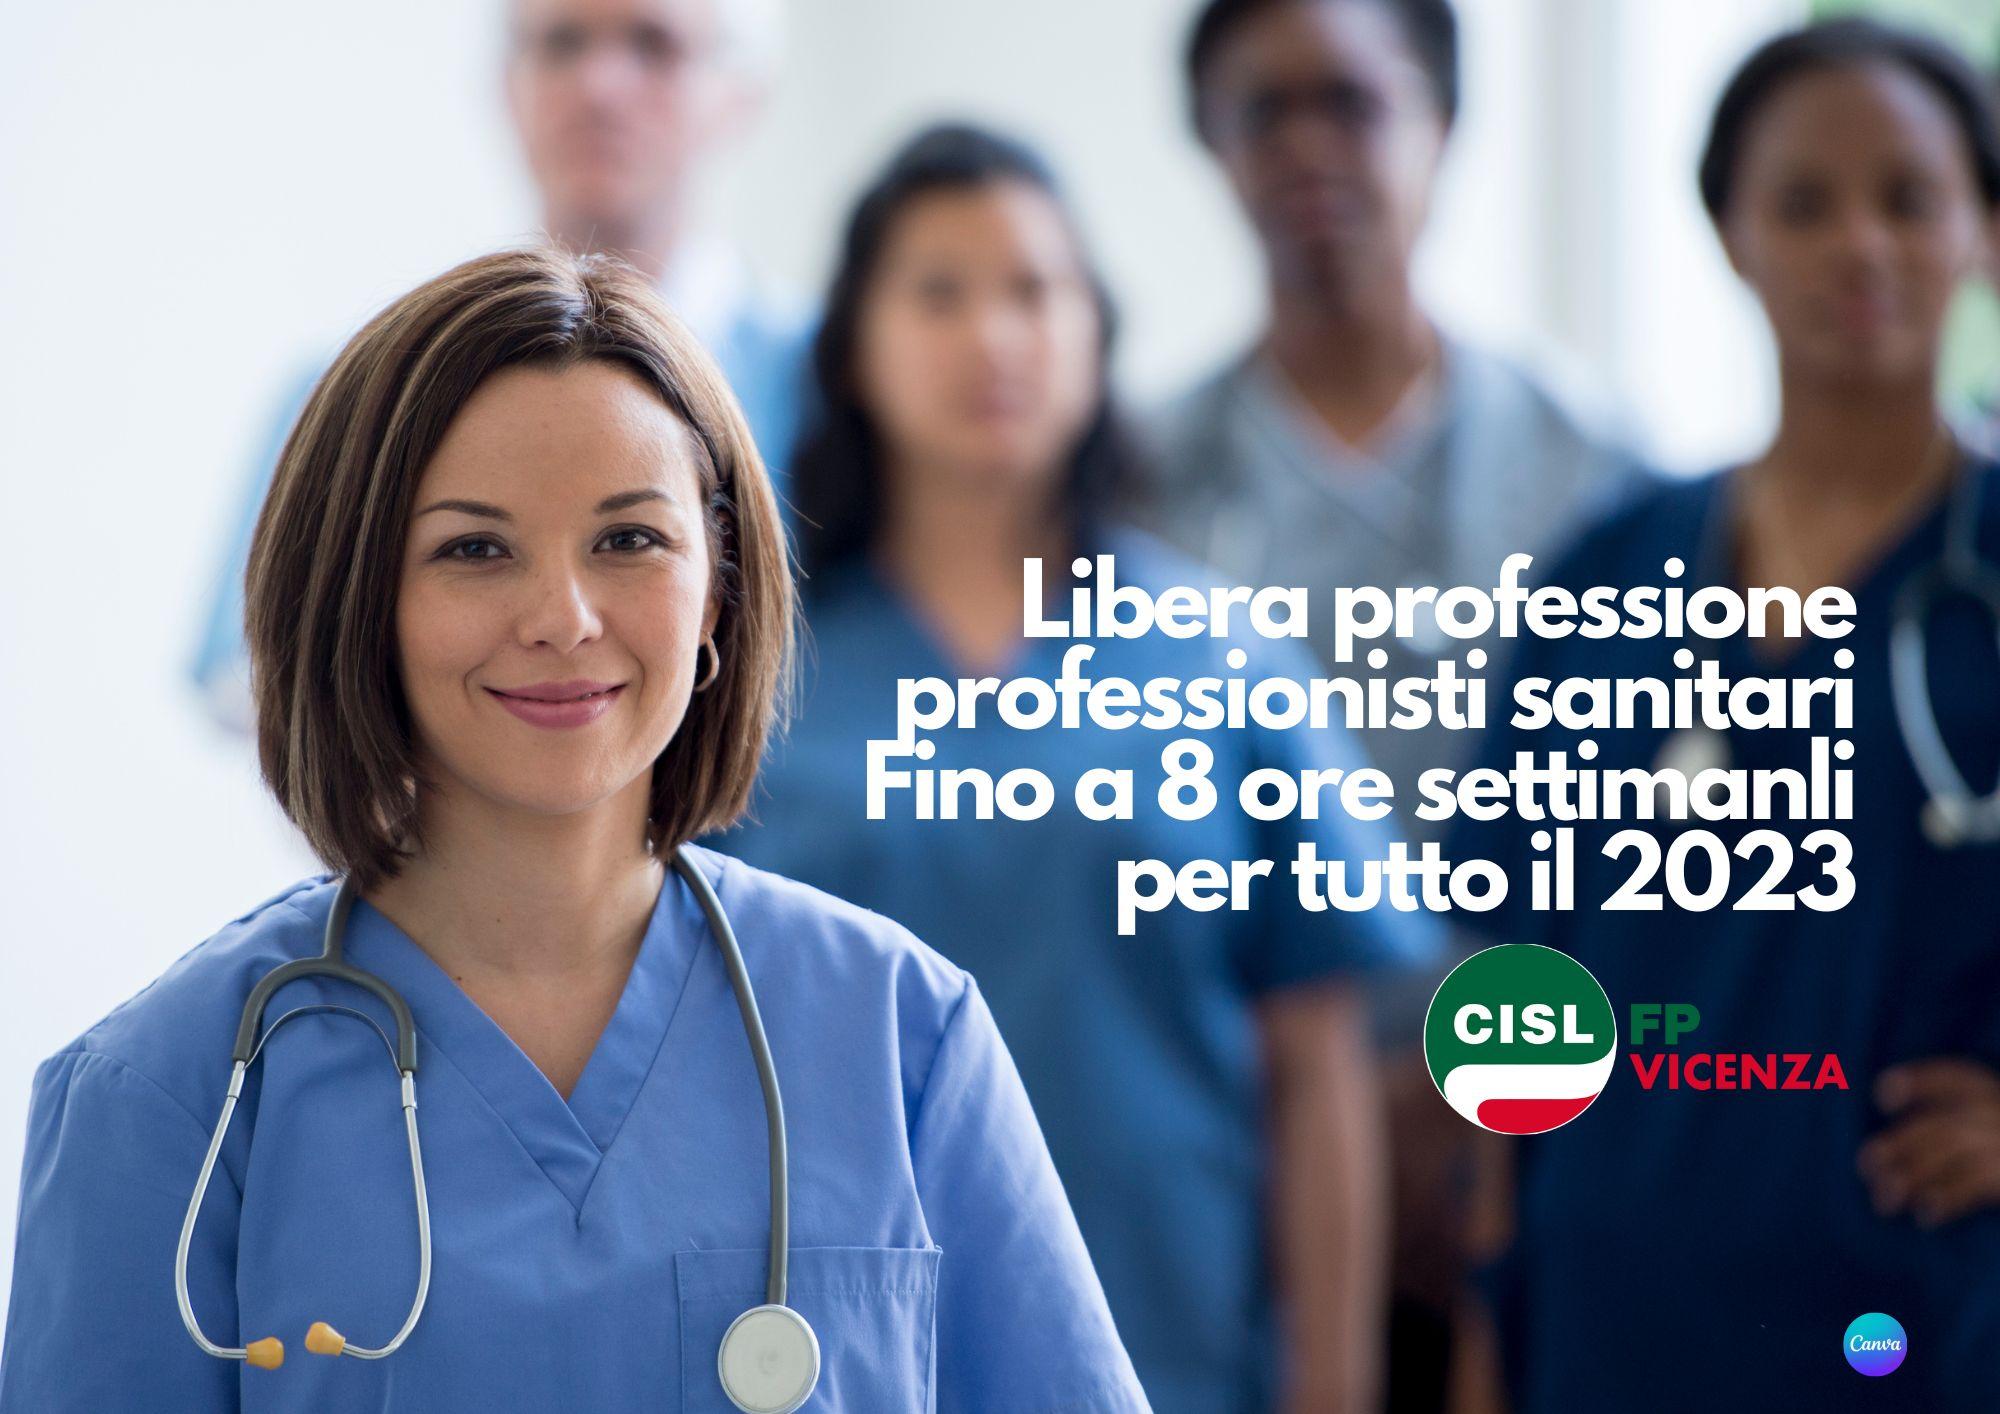 CISL FP Vicenza. Libera professione professionisti sanitari confermata nel 2023 sino a 8 ore settimanali